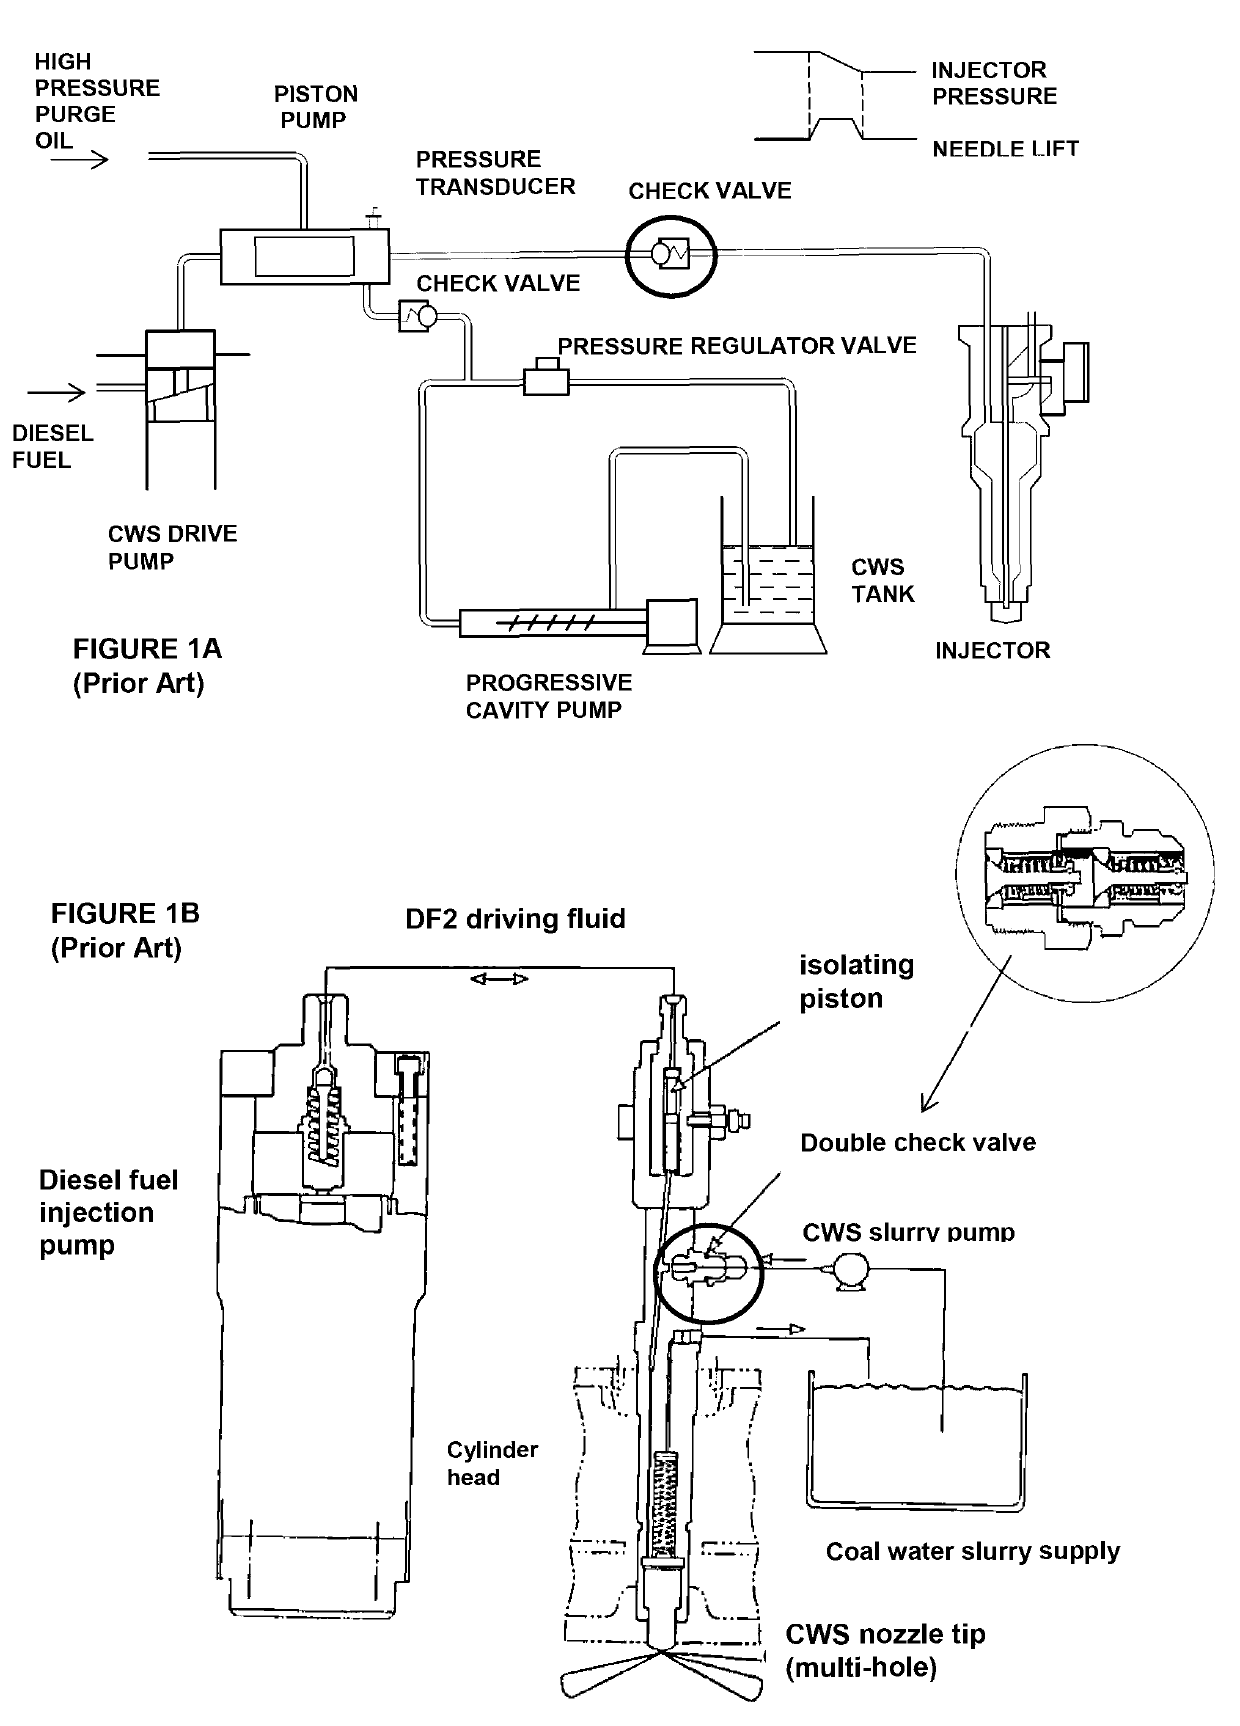 Improved injector arrangement for diesel engines using slurry or emulsion fuels